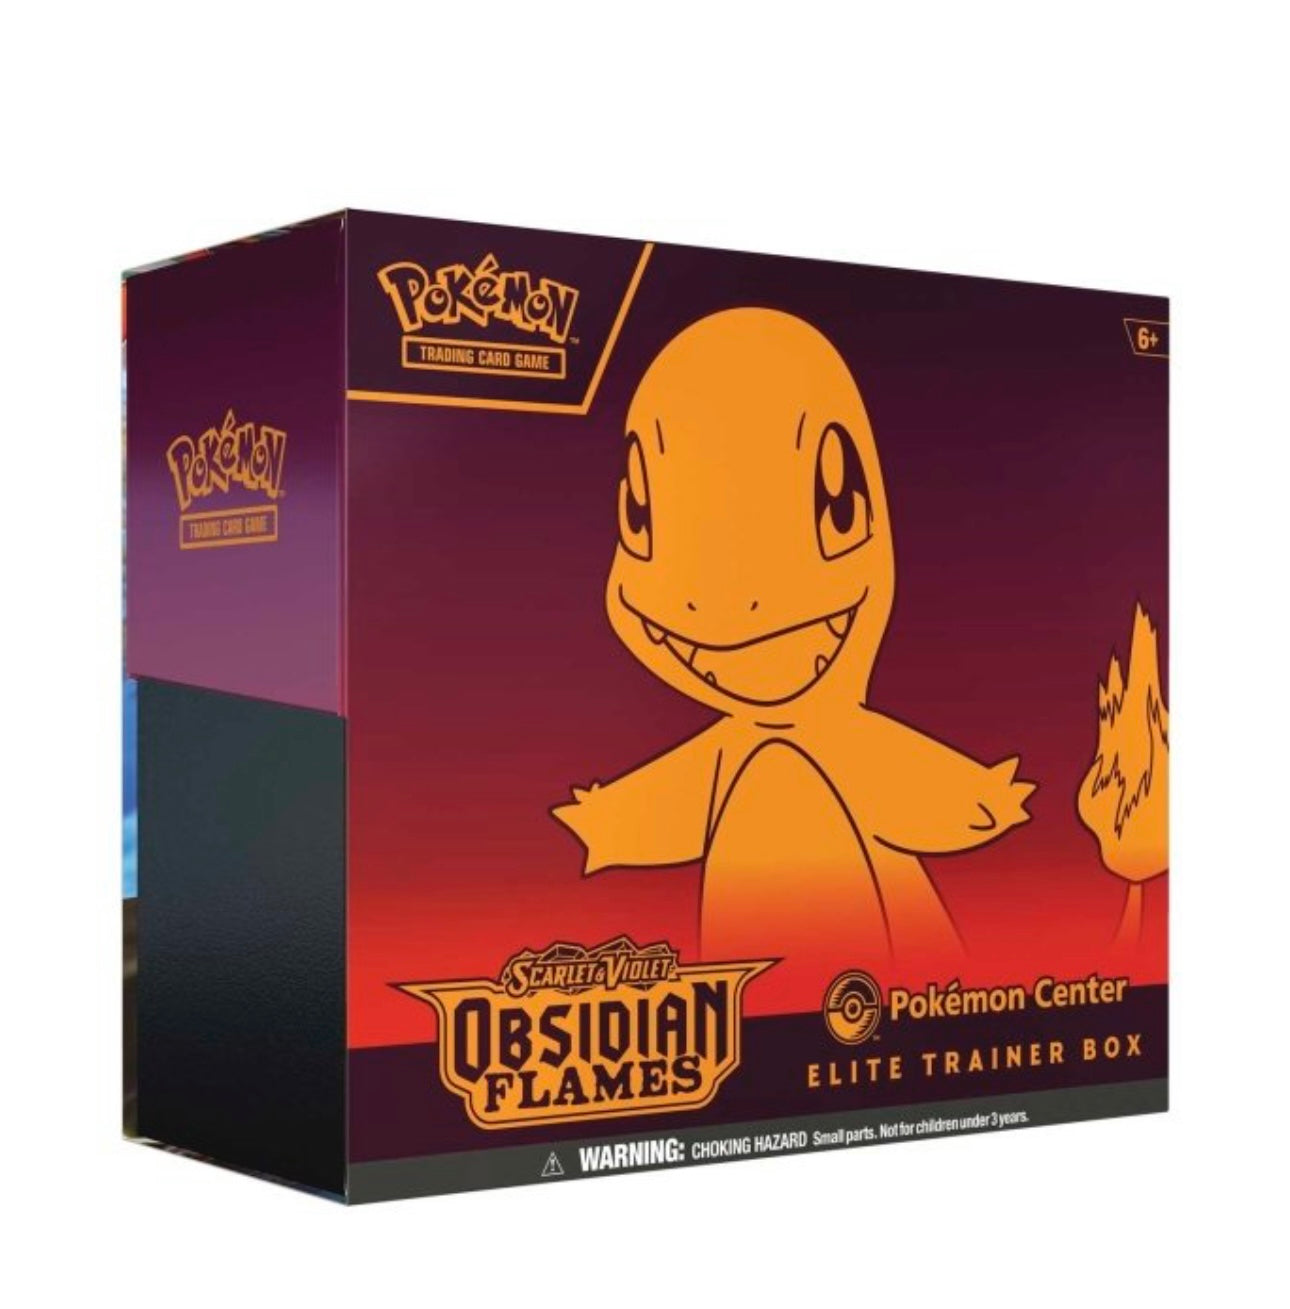 Pokemon Card Sleeves - Obsidian Flames - Charmander Elite Trainer - 65  Sleeves + 4 Cardboard dividers